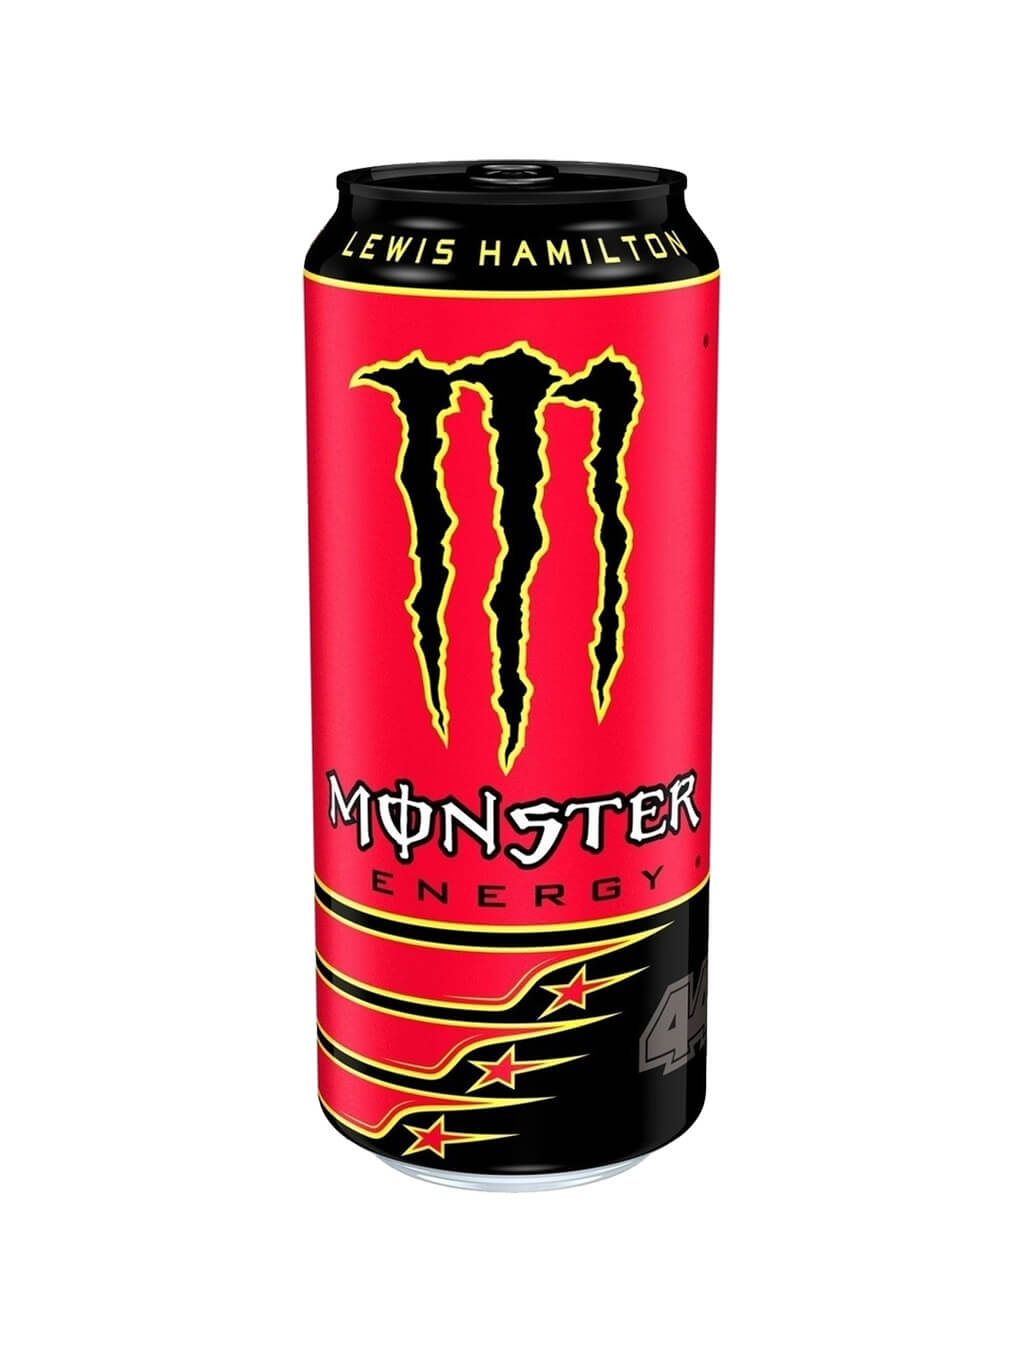 картинка Black Monster Energy Lewis Hamilton Черный монстр энергетический напиток Льюис Хэмилтон банка 500 мл